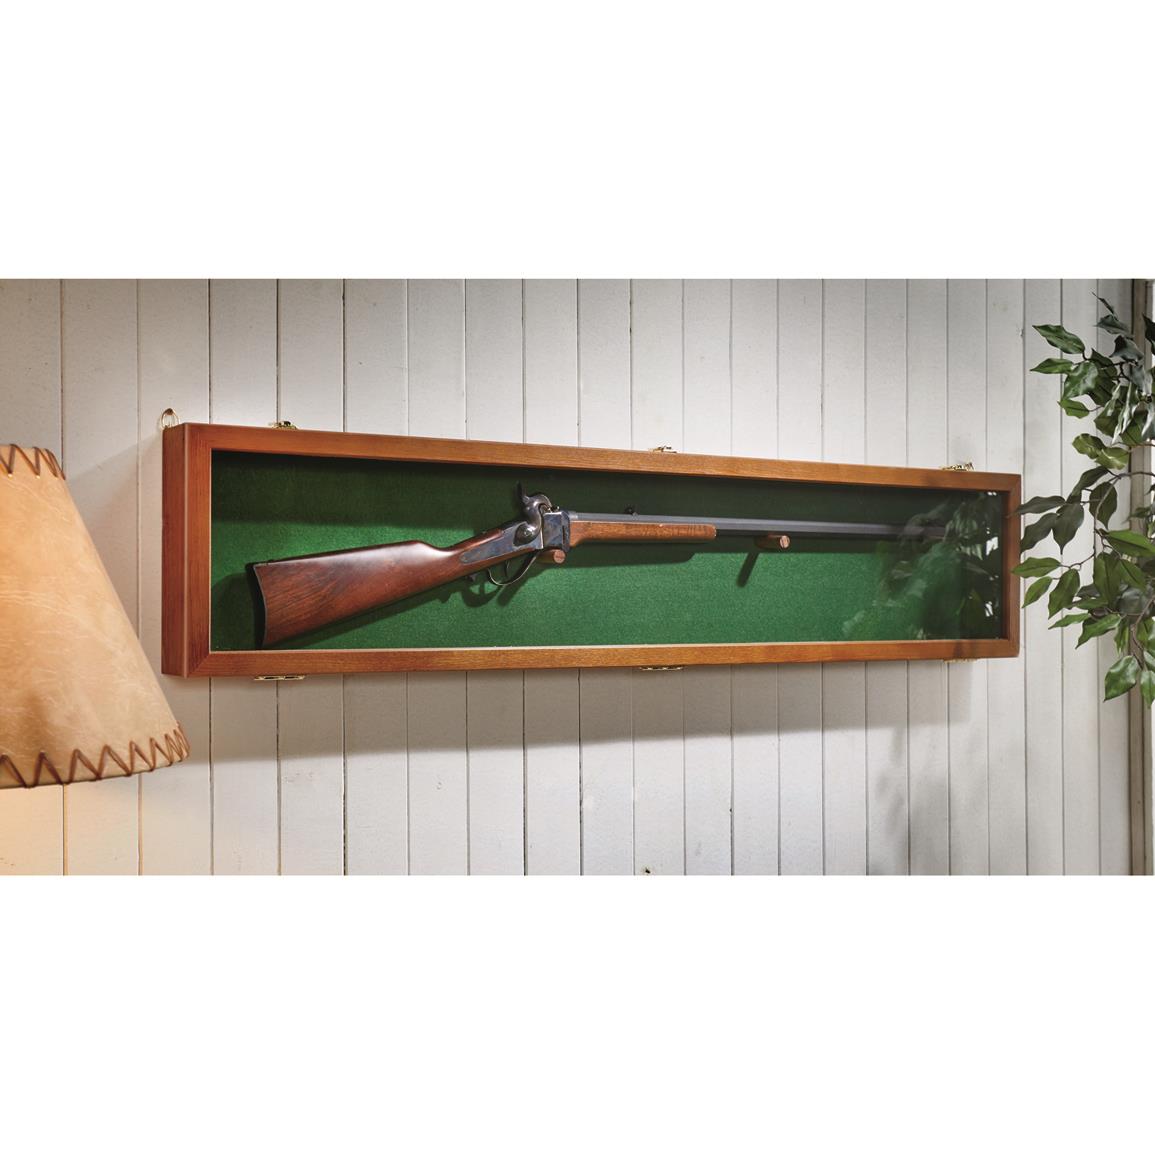 Collectors Handgun Gun Display Case Storage Solid Hardwood Hang Rack Glass 